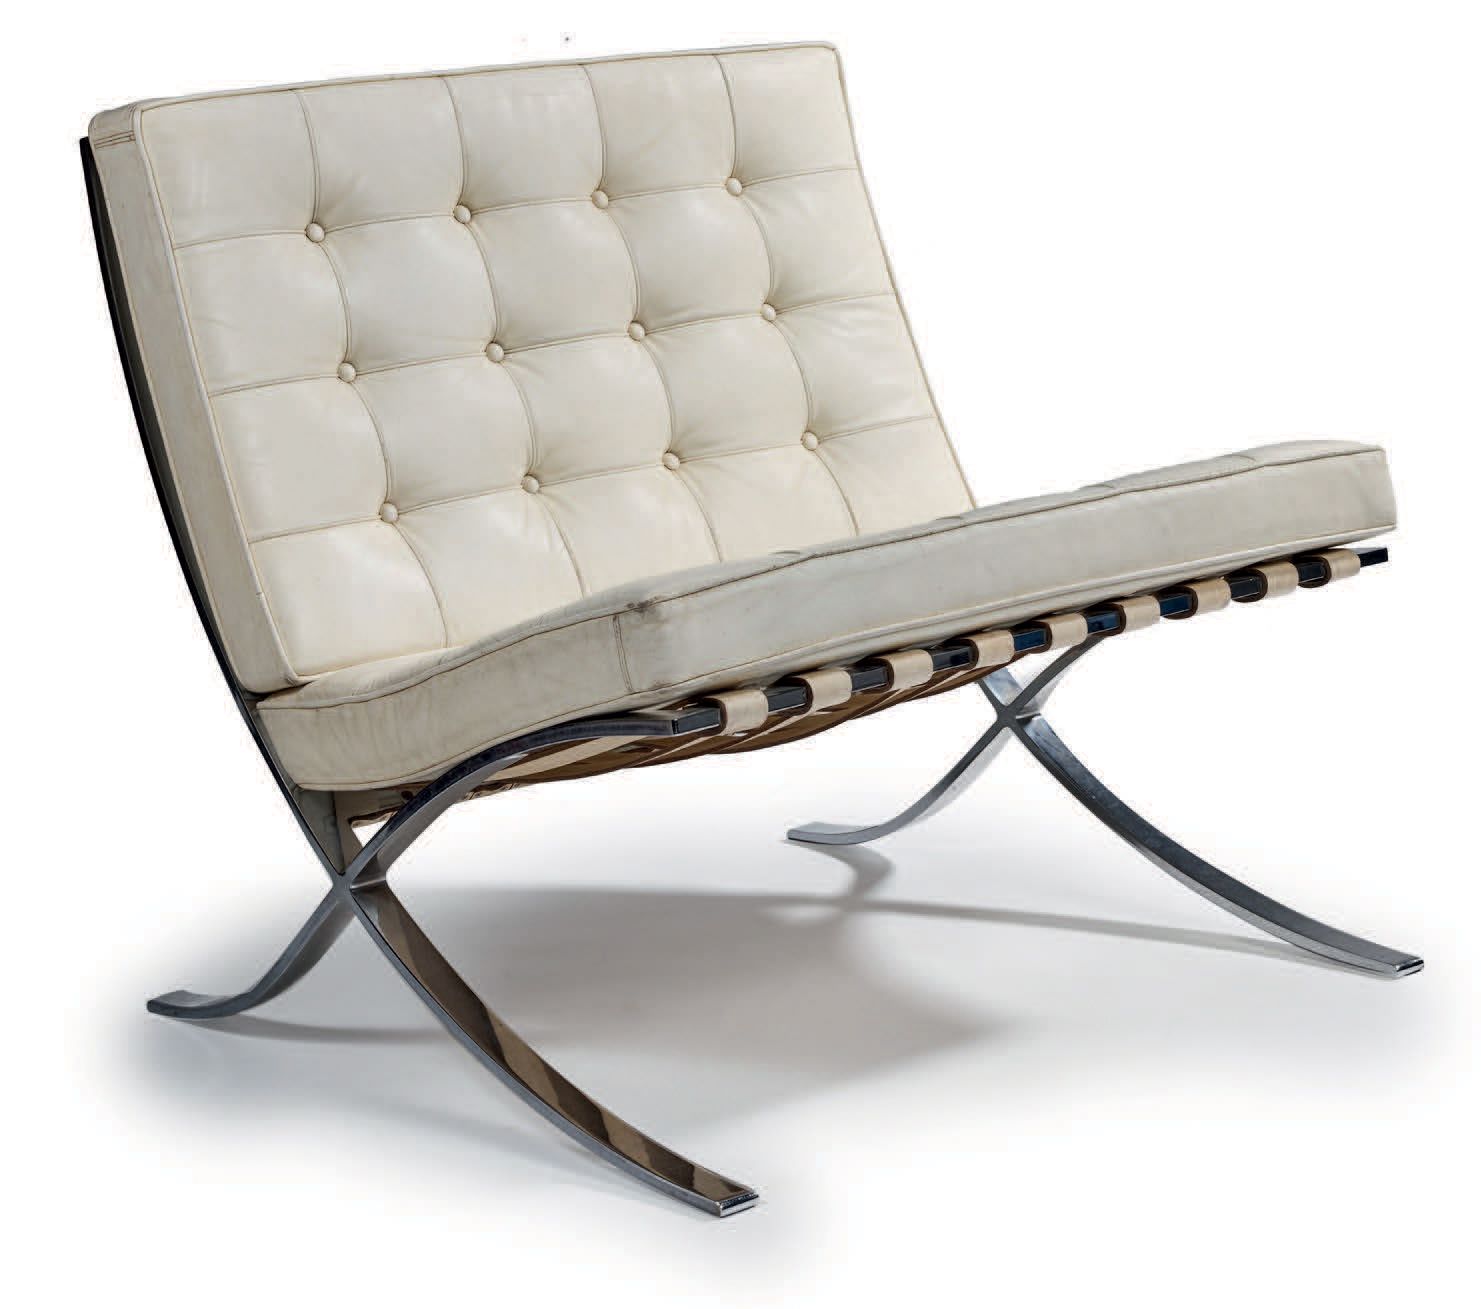 Mies VAN DER ROHE (1886-1969) 
"巴塞罗纳 "扶手椅，带平面镀铬钢架
座椅上铺有白色皮革
高：75 宽：78 深：80 厘米